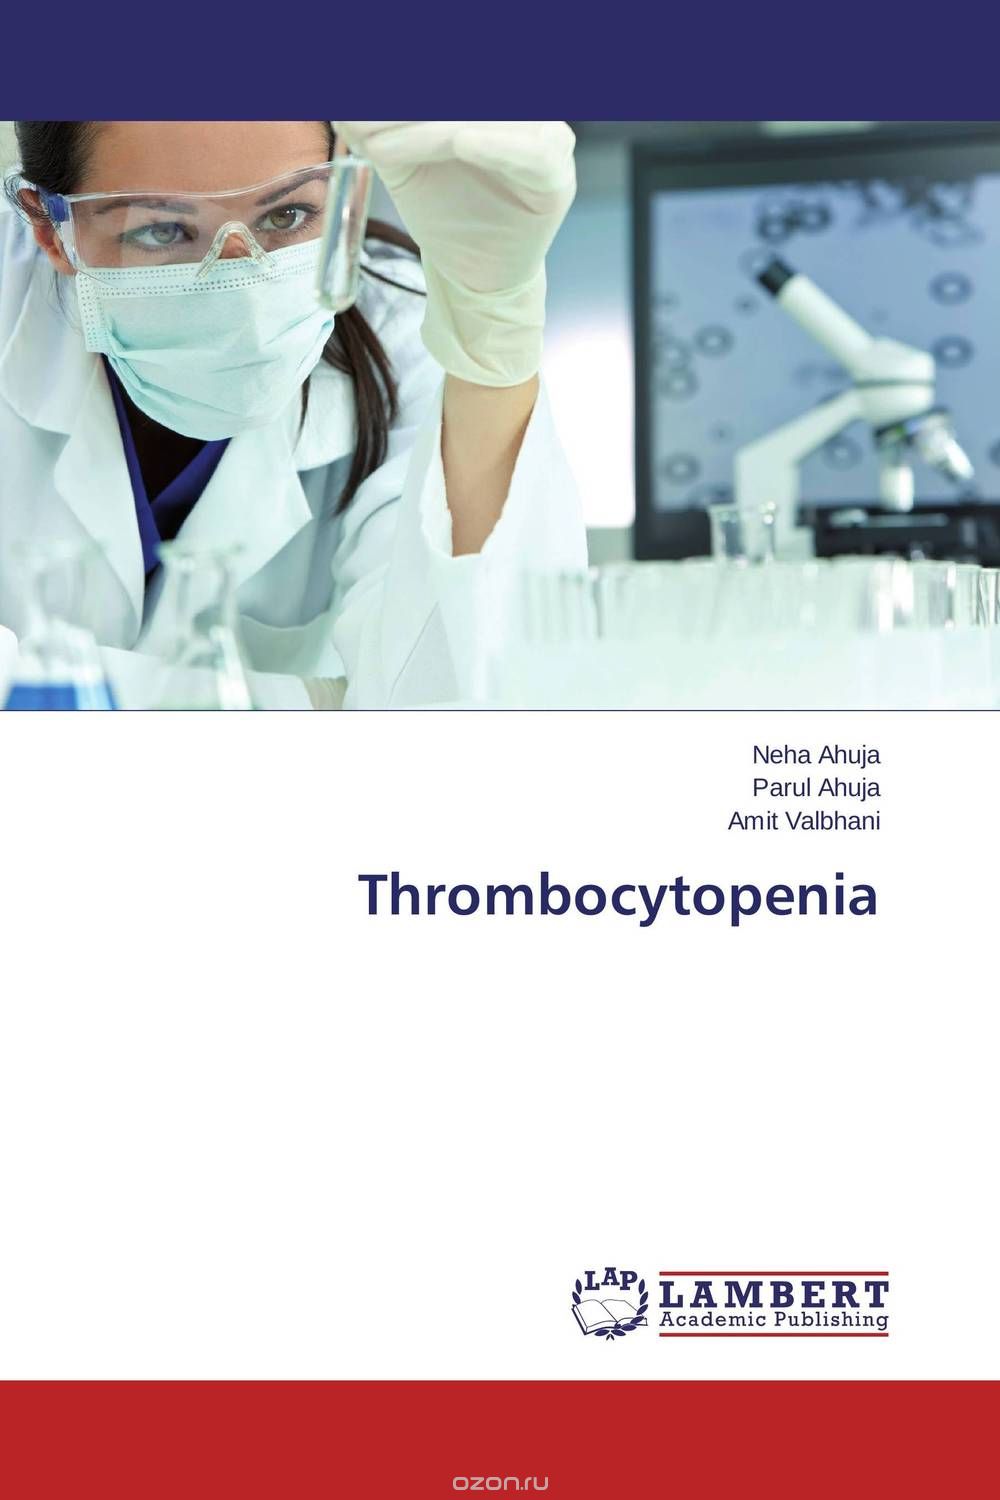 Скачать книгу "Thrombocytopenia"